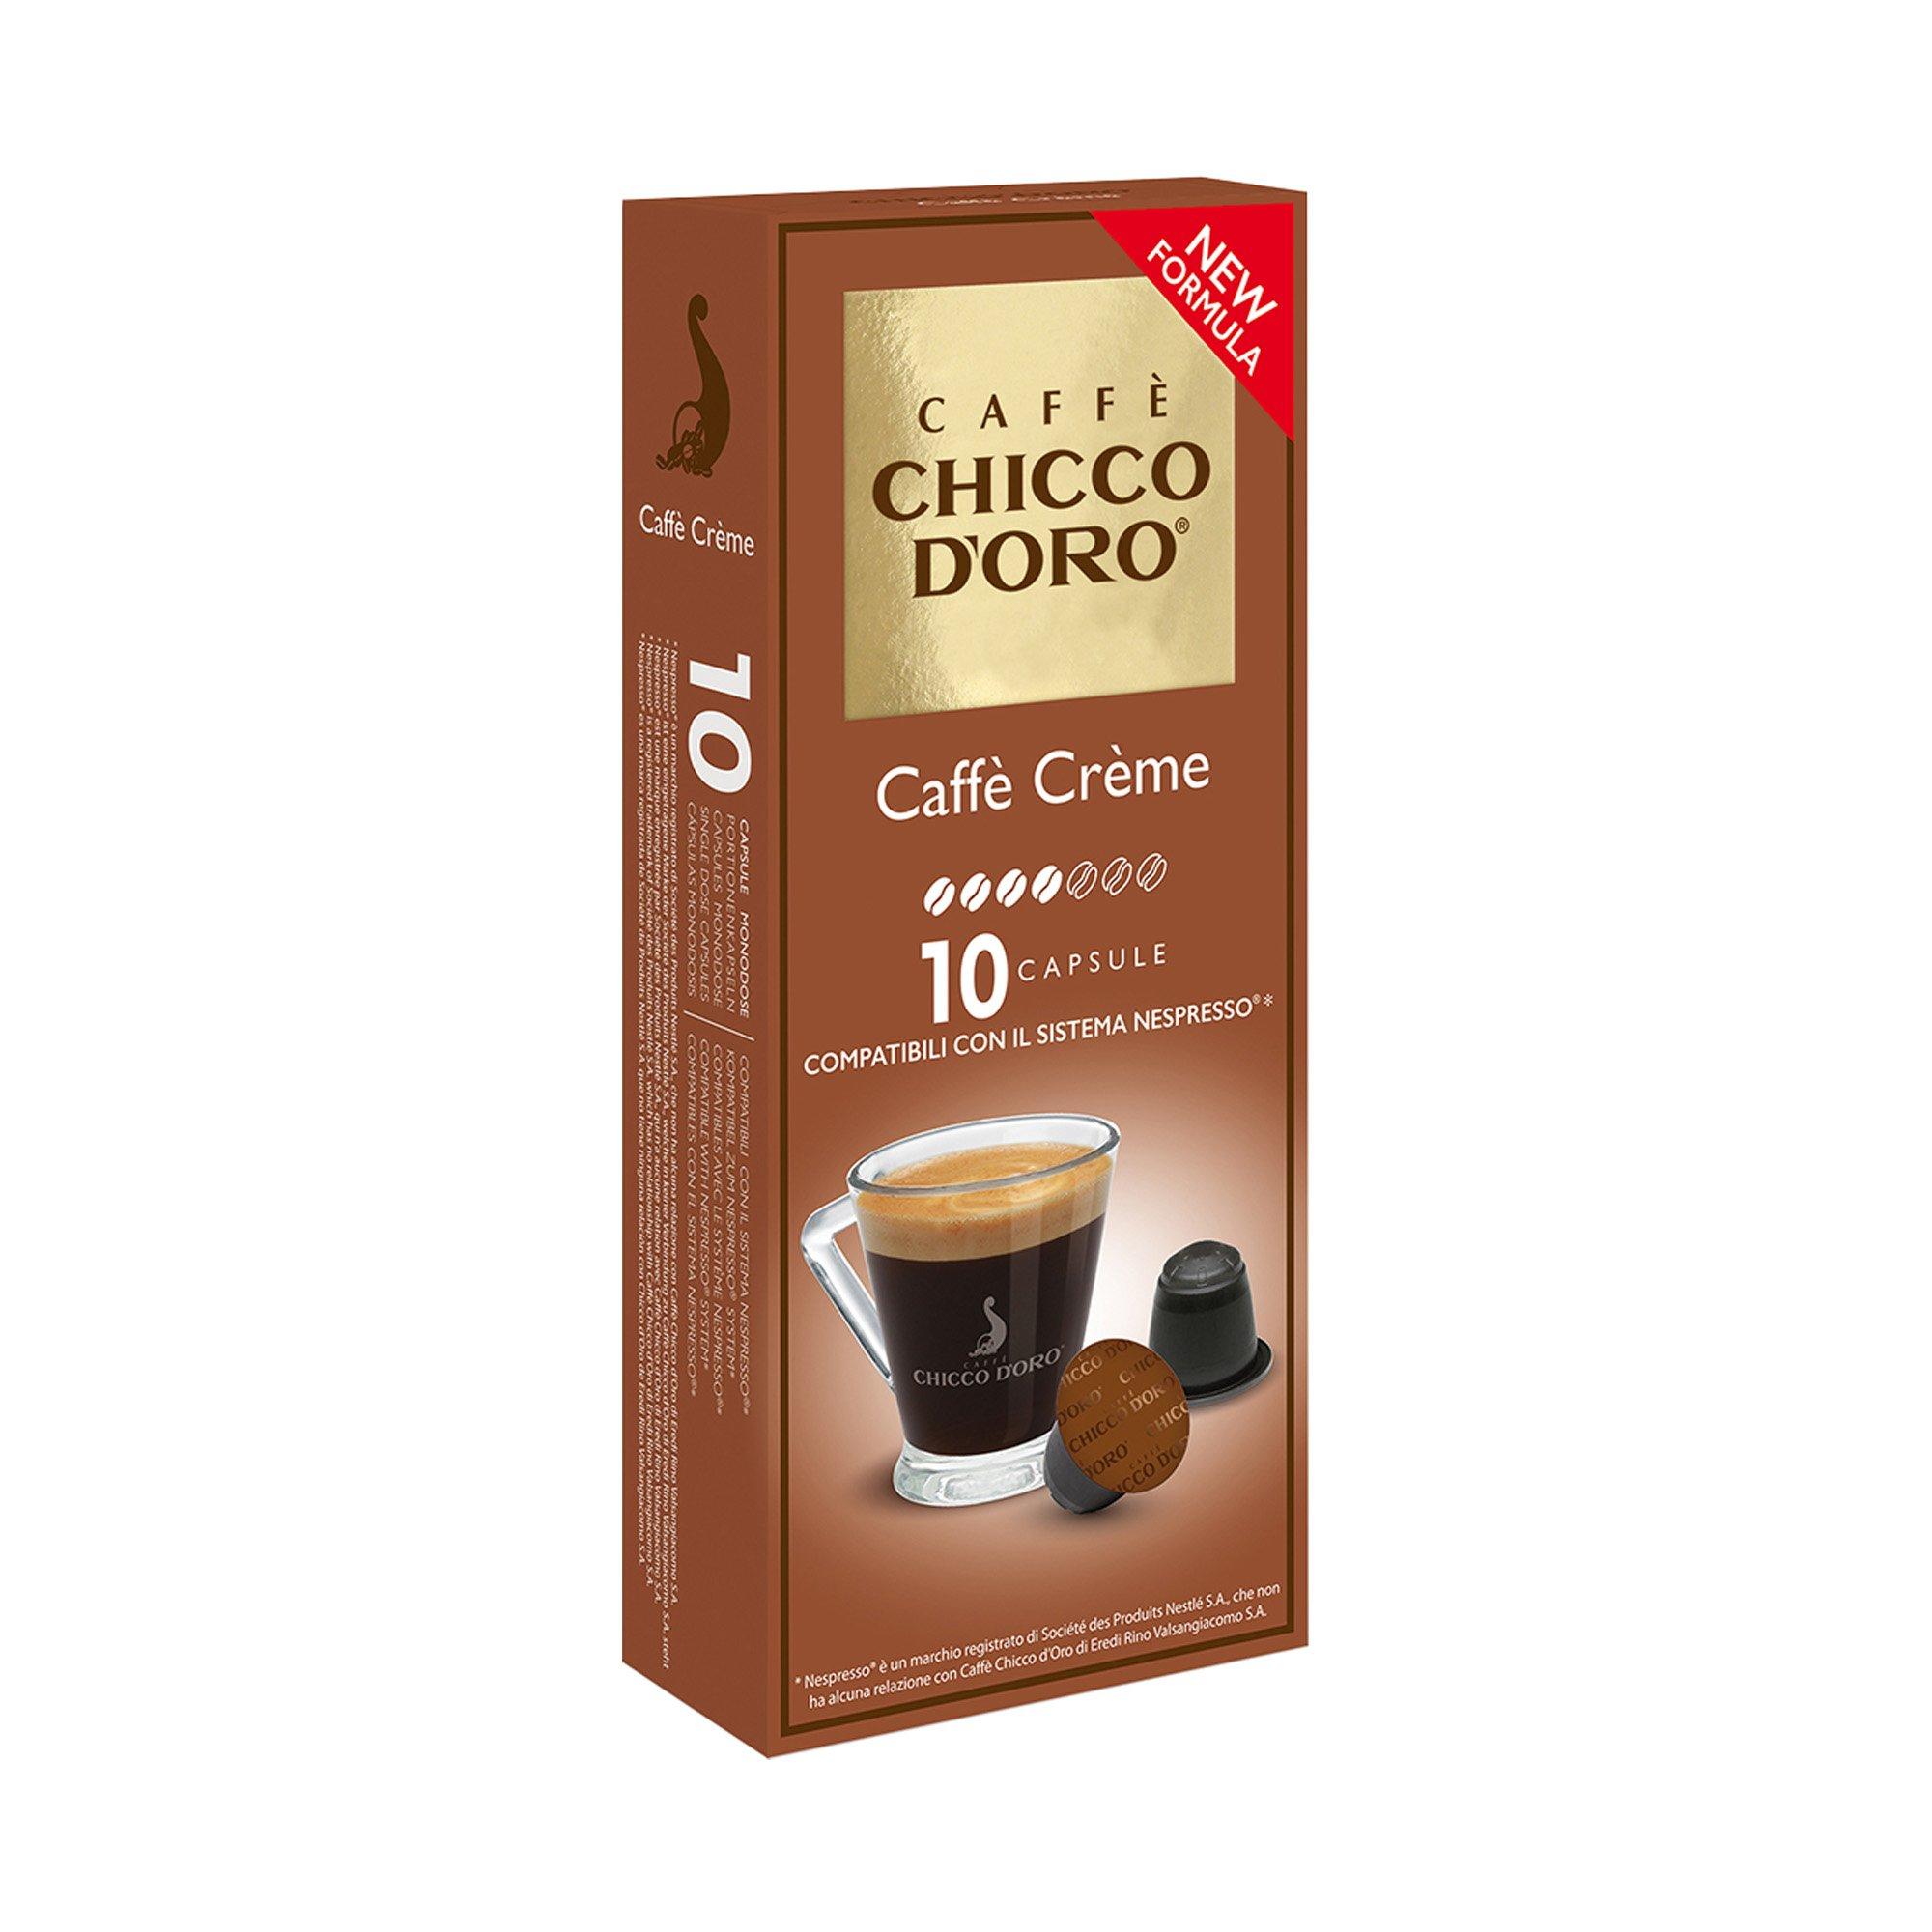 Image of CHICCO D'ORO Caffè Crème - 10 Capsule